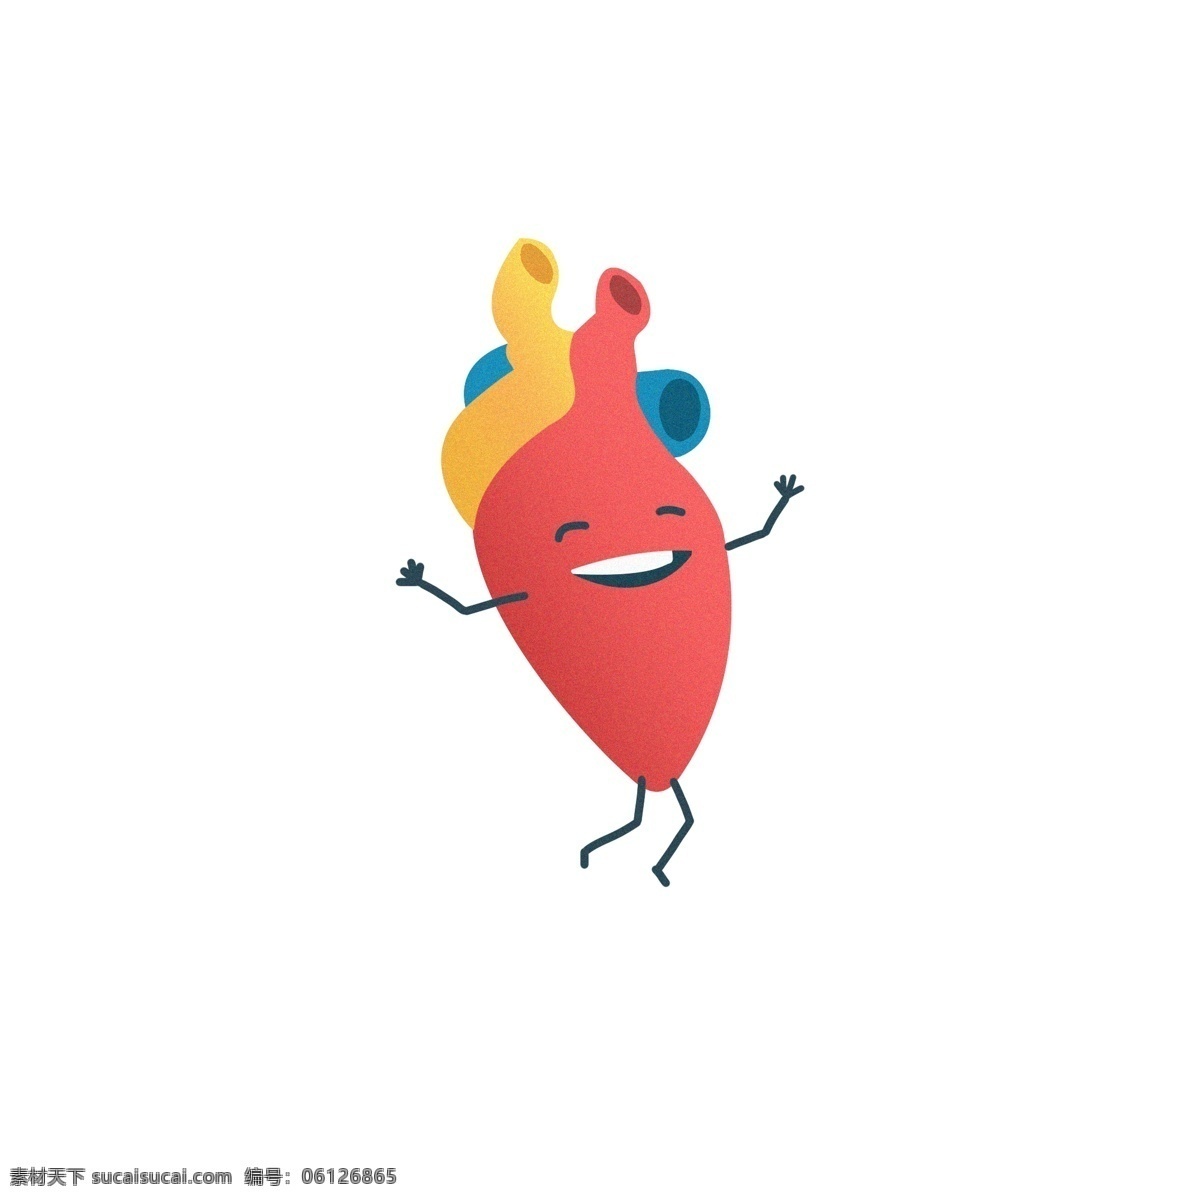 卡通 心脏 拟人化 元素 世界心脏日 可爱 五脏六腑 手绘